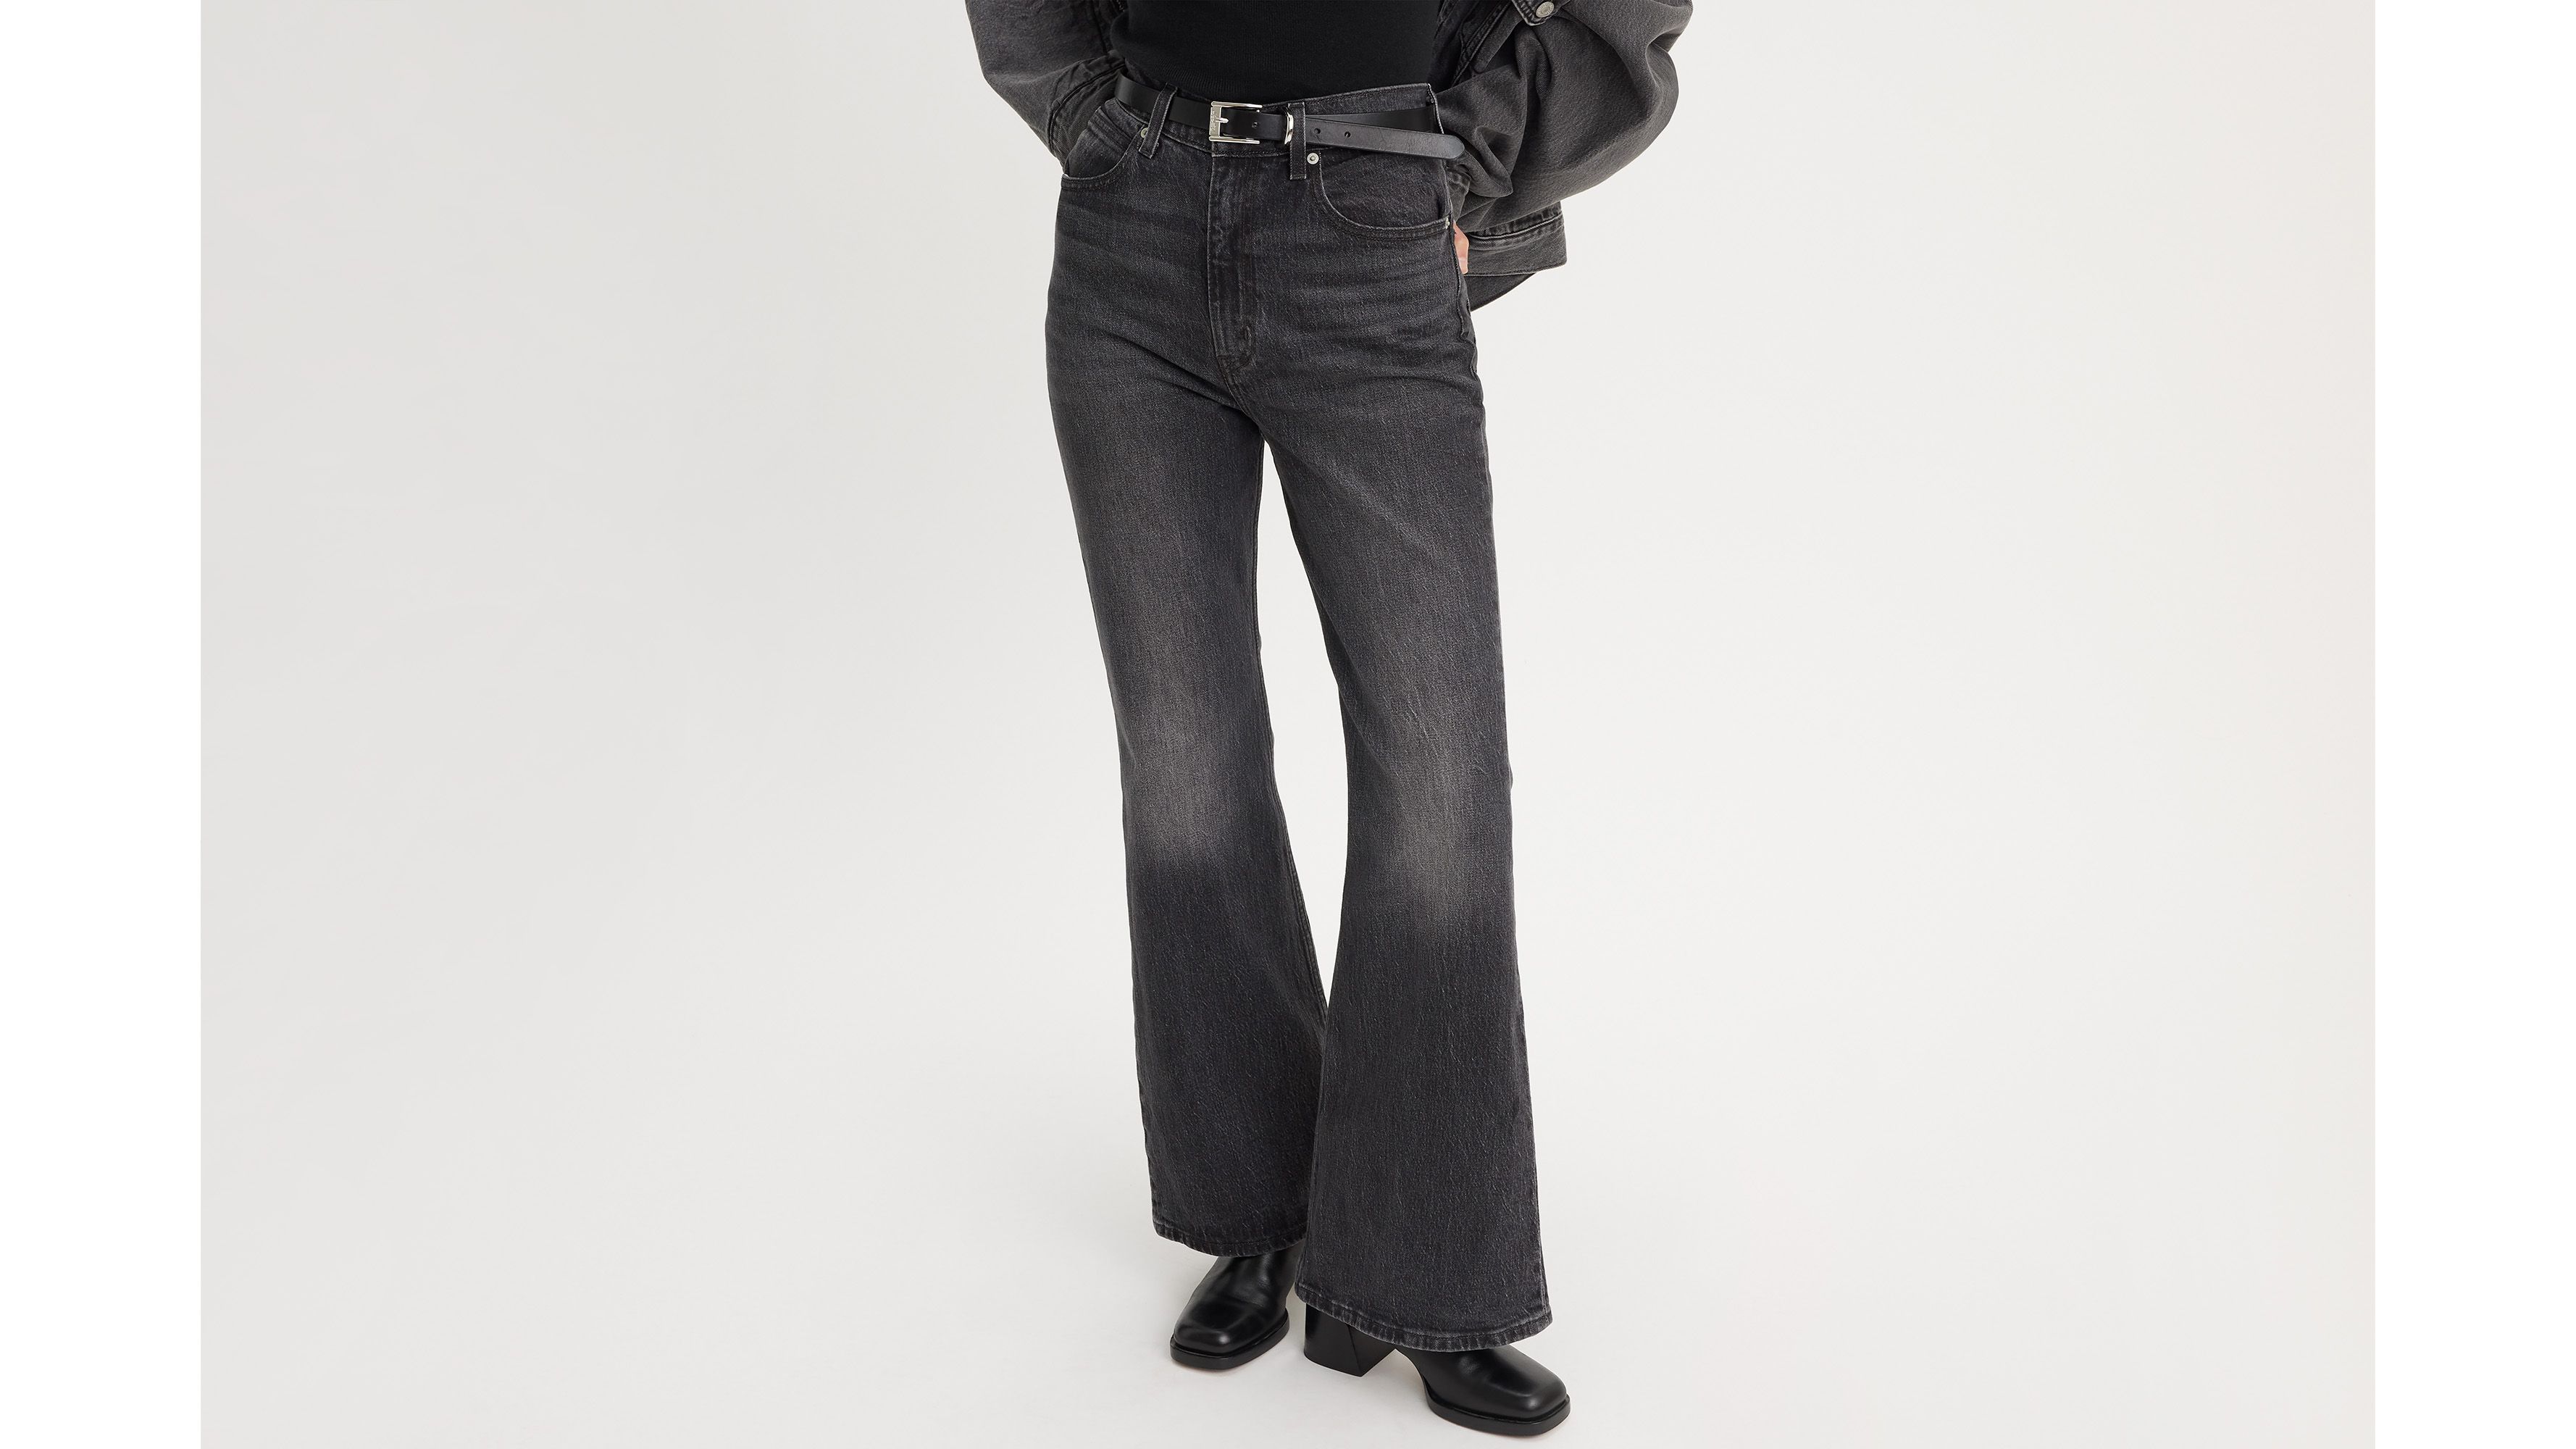 70's High Flare Women's Jeans - Dark Wash